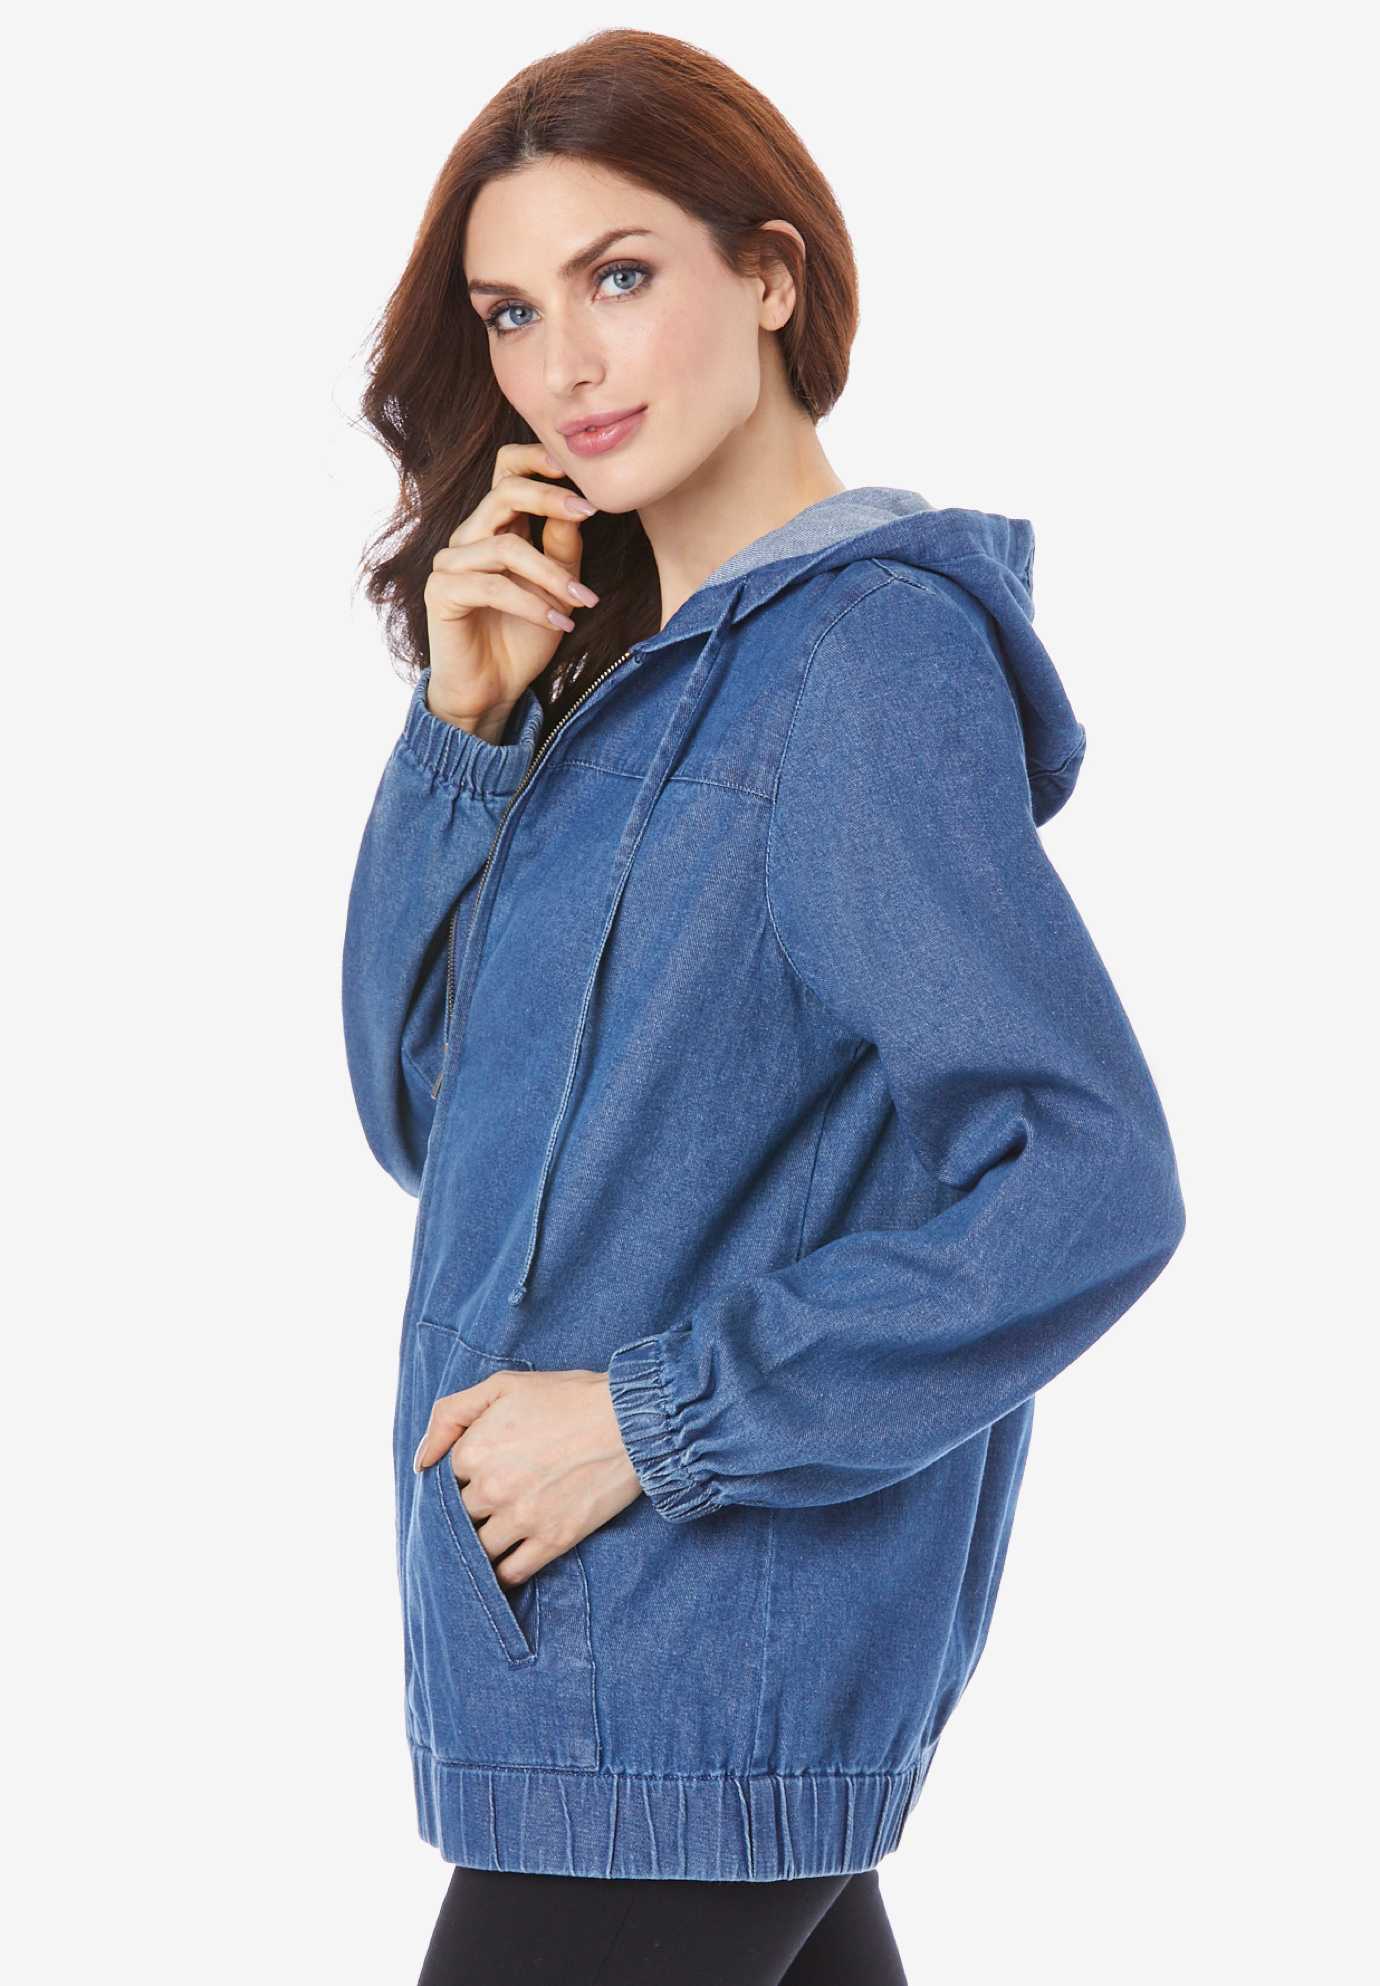 Roaman's Women's Plus Size Cotton Complete Zip-Up Hoodie Denim Jacket - image 4 of 5